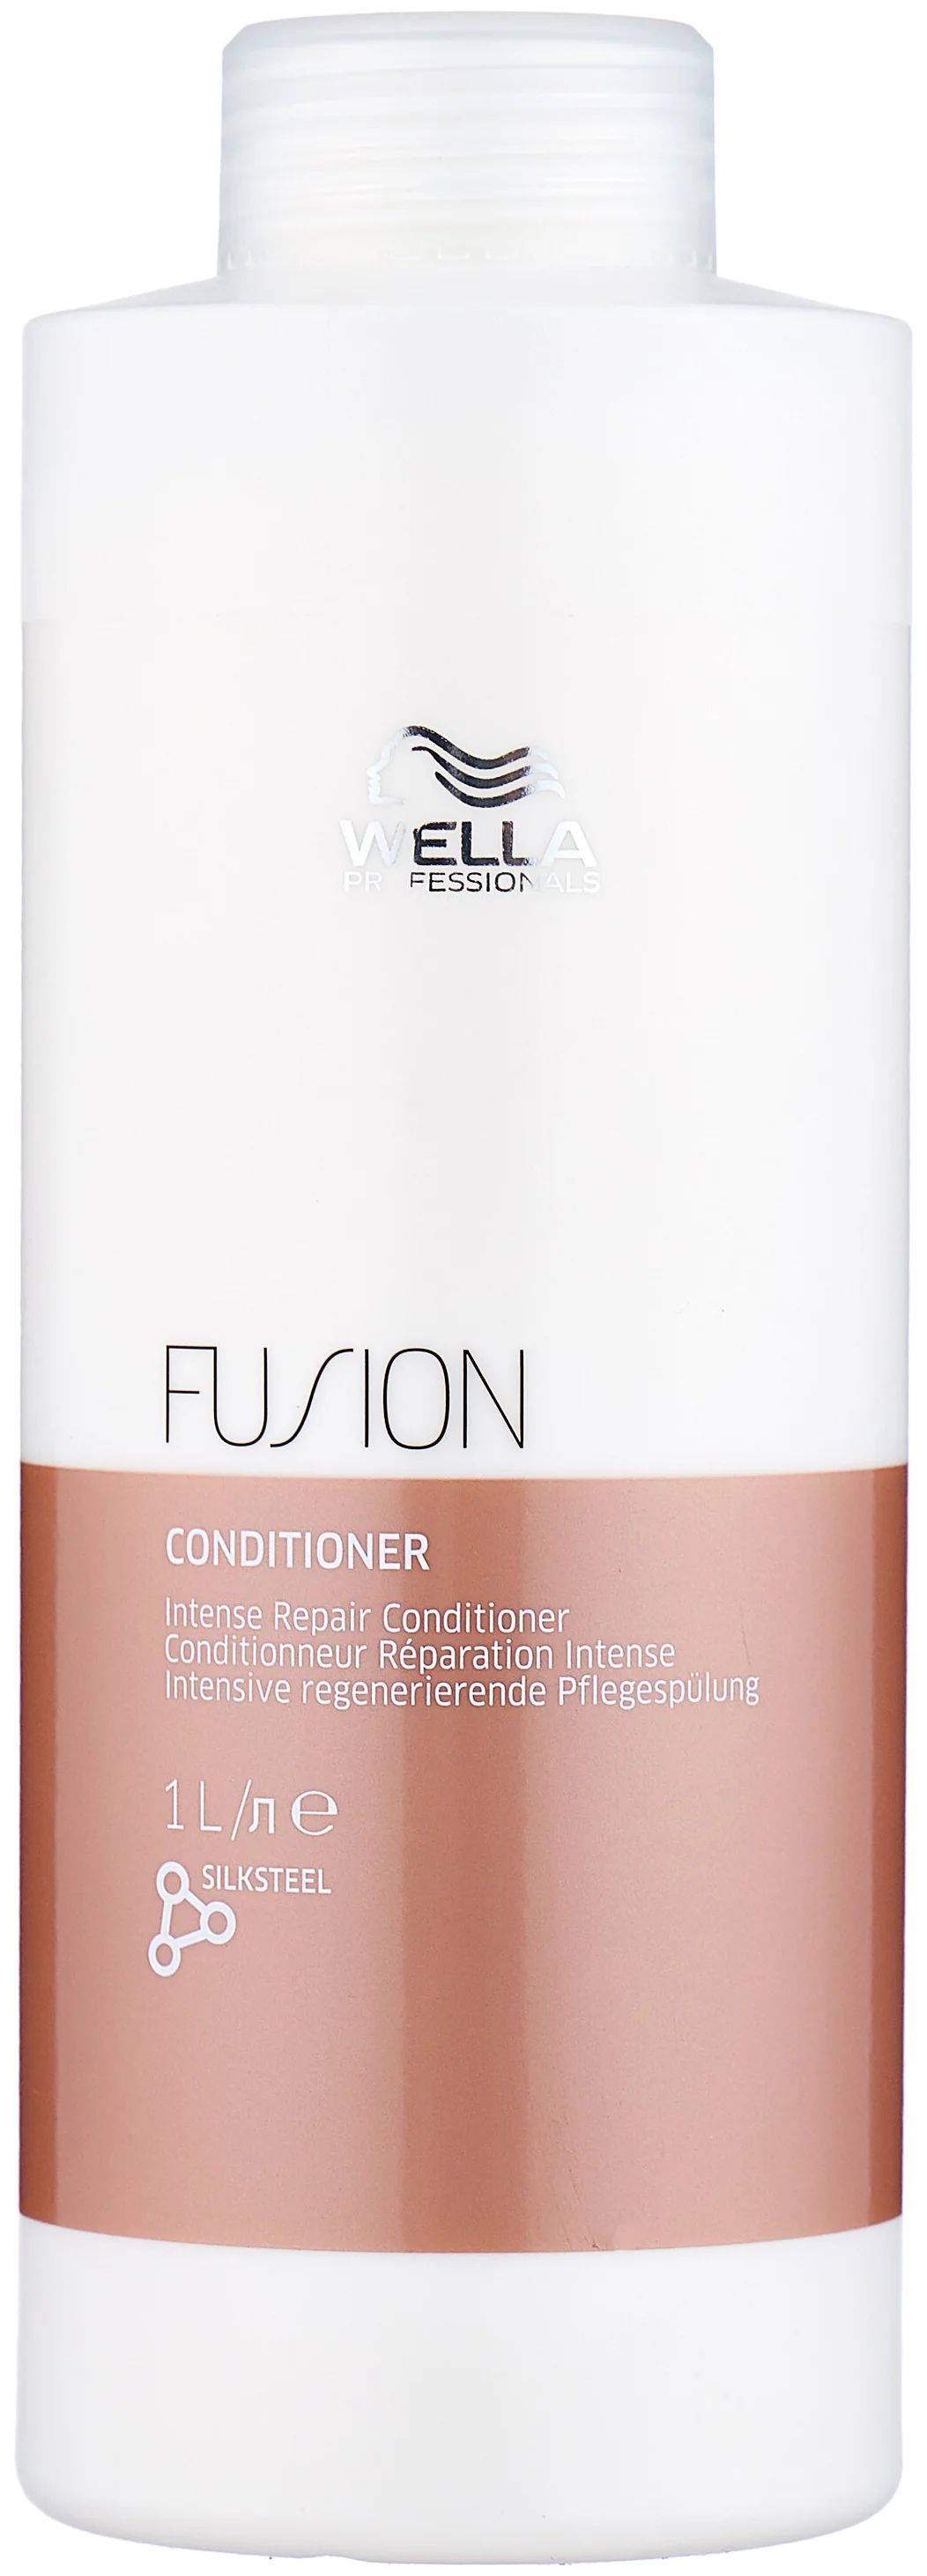 Бальзам для волос Wella Professionals Fusion интенсивно восстанавливающий, 1 л бальзам оттеночный для волос concept fusion magic silver жемчужный блонд 400мл